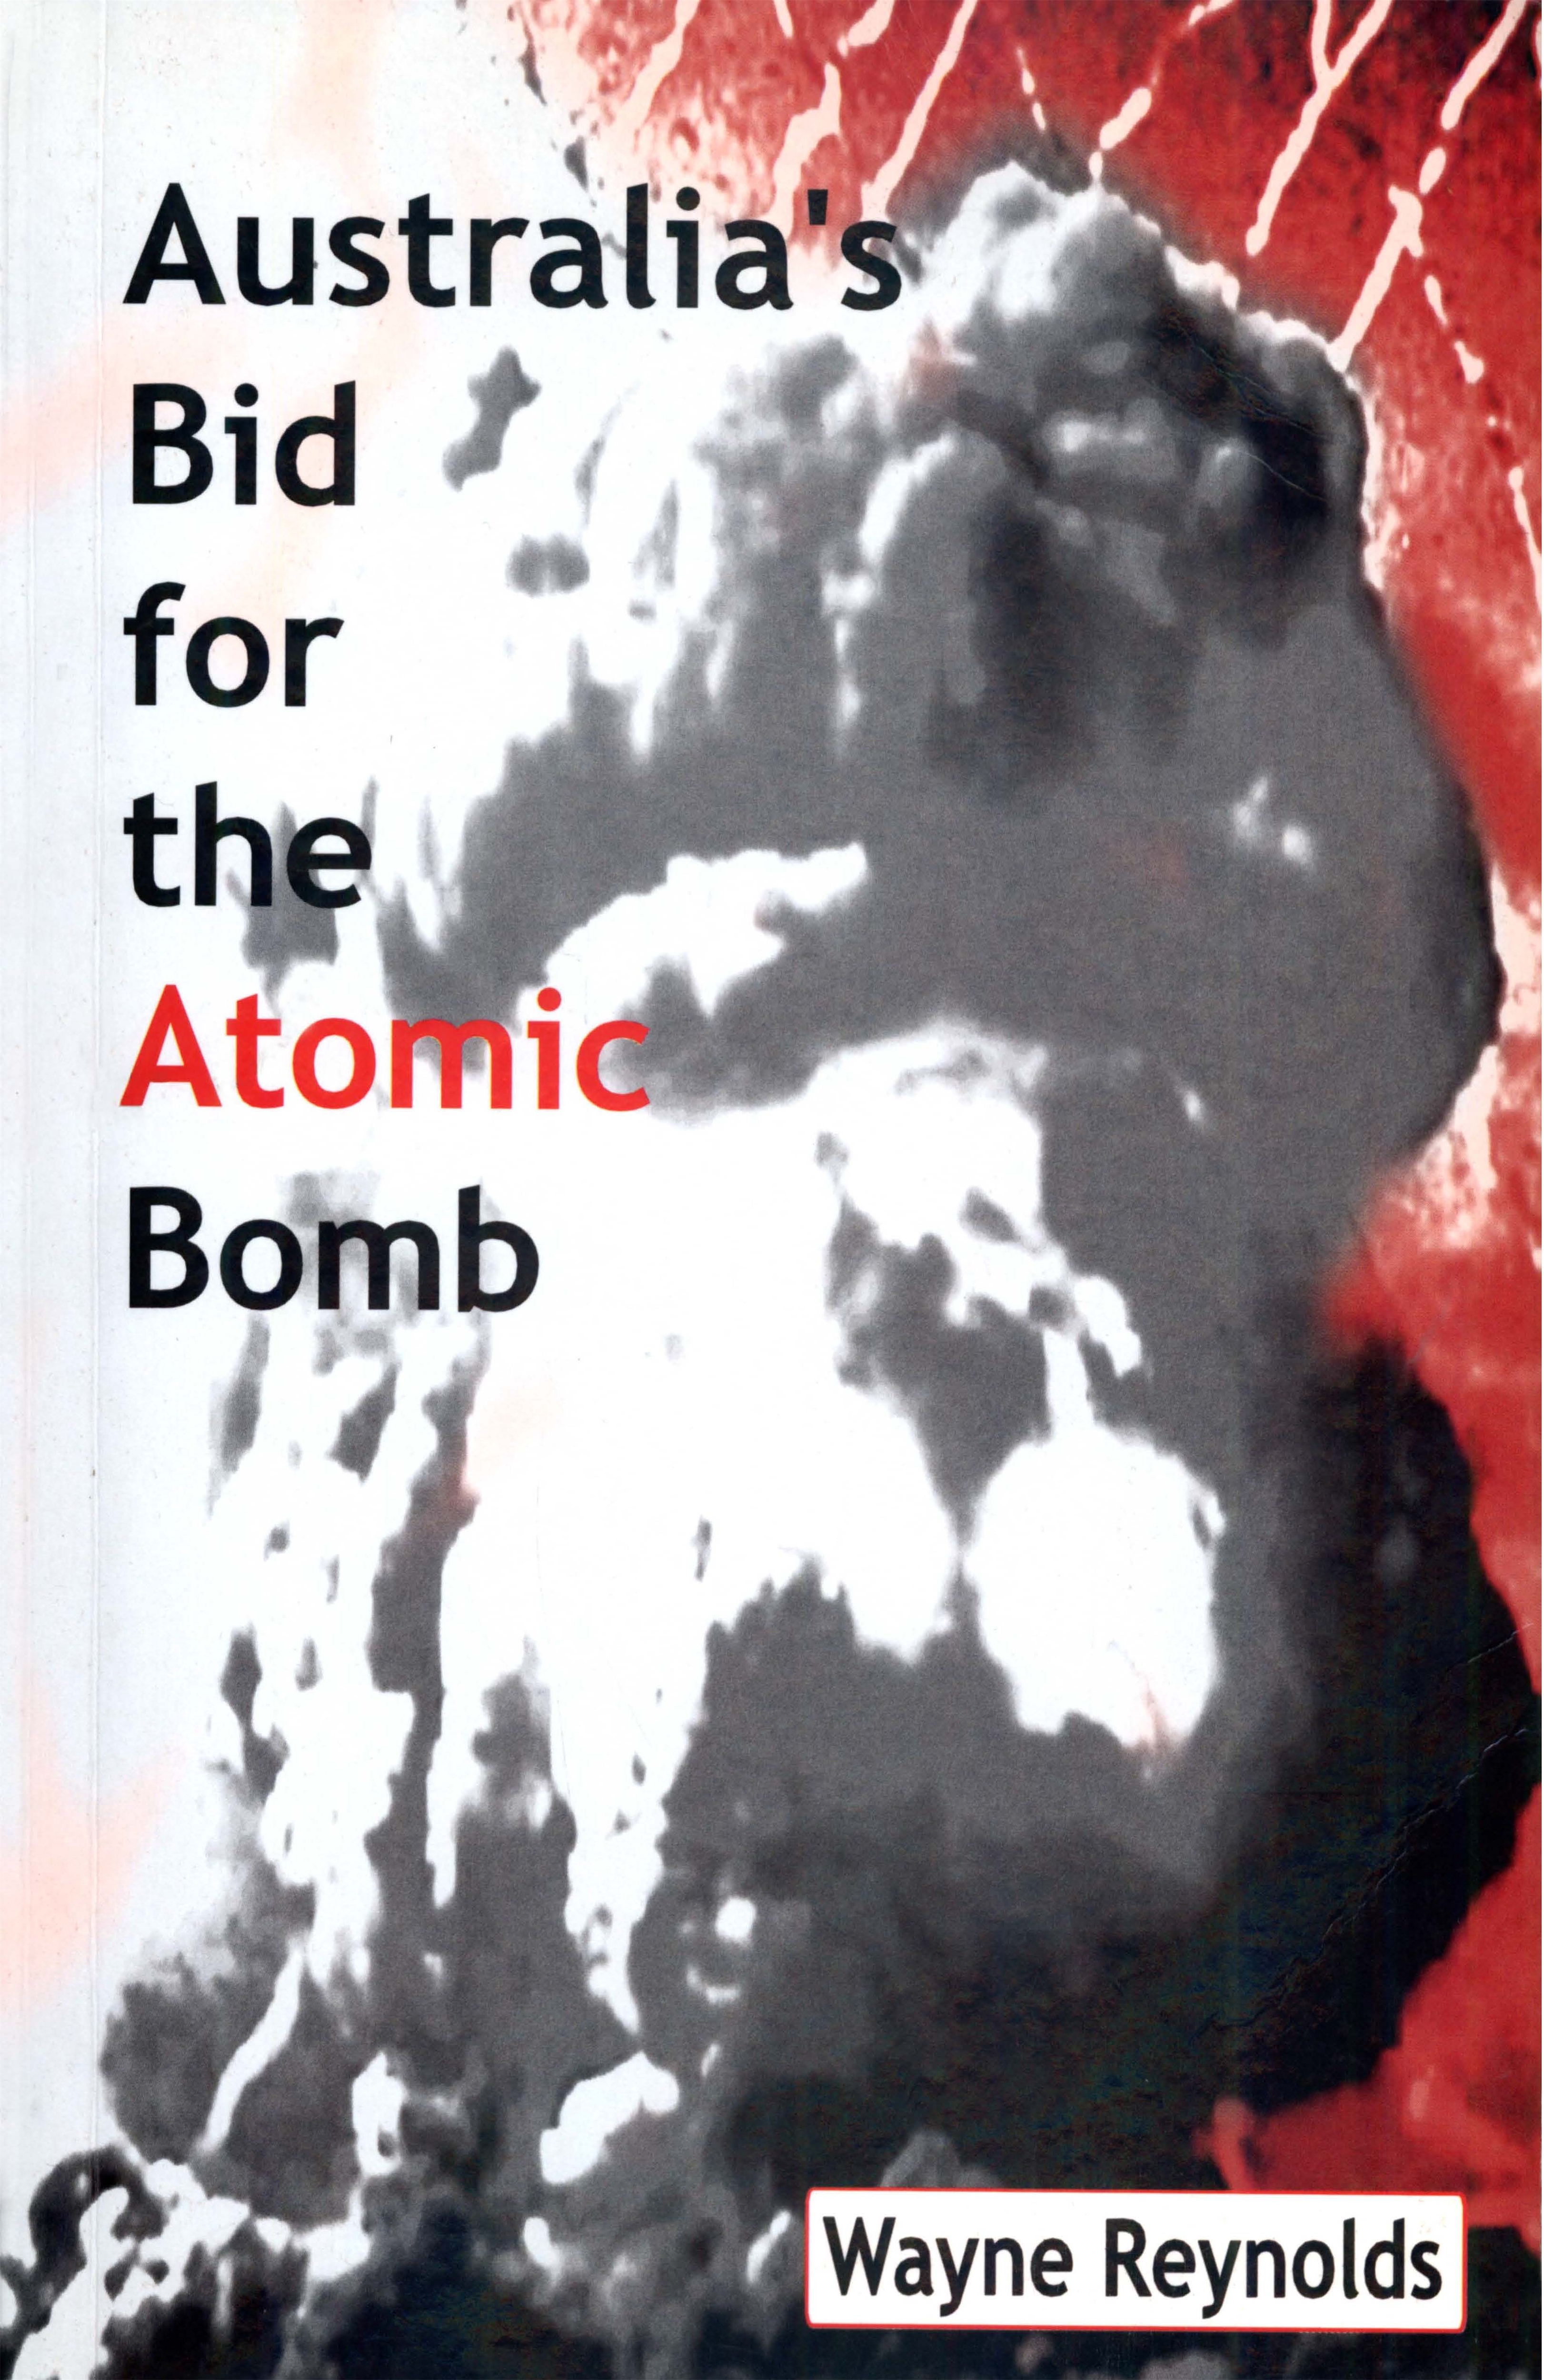 Australia’s Bid for the Atomic Bomb